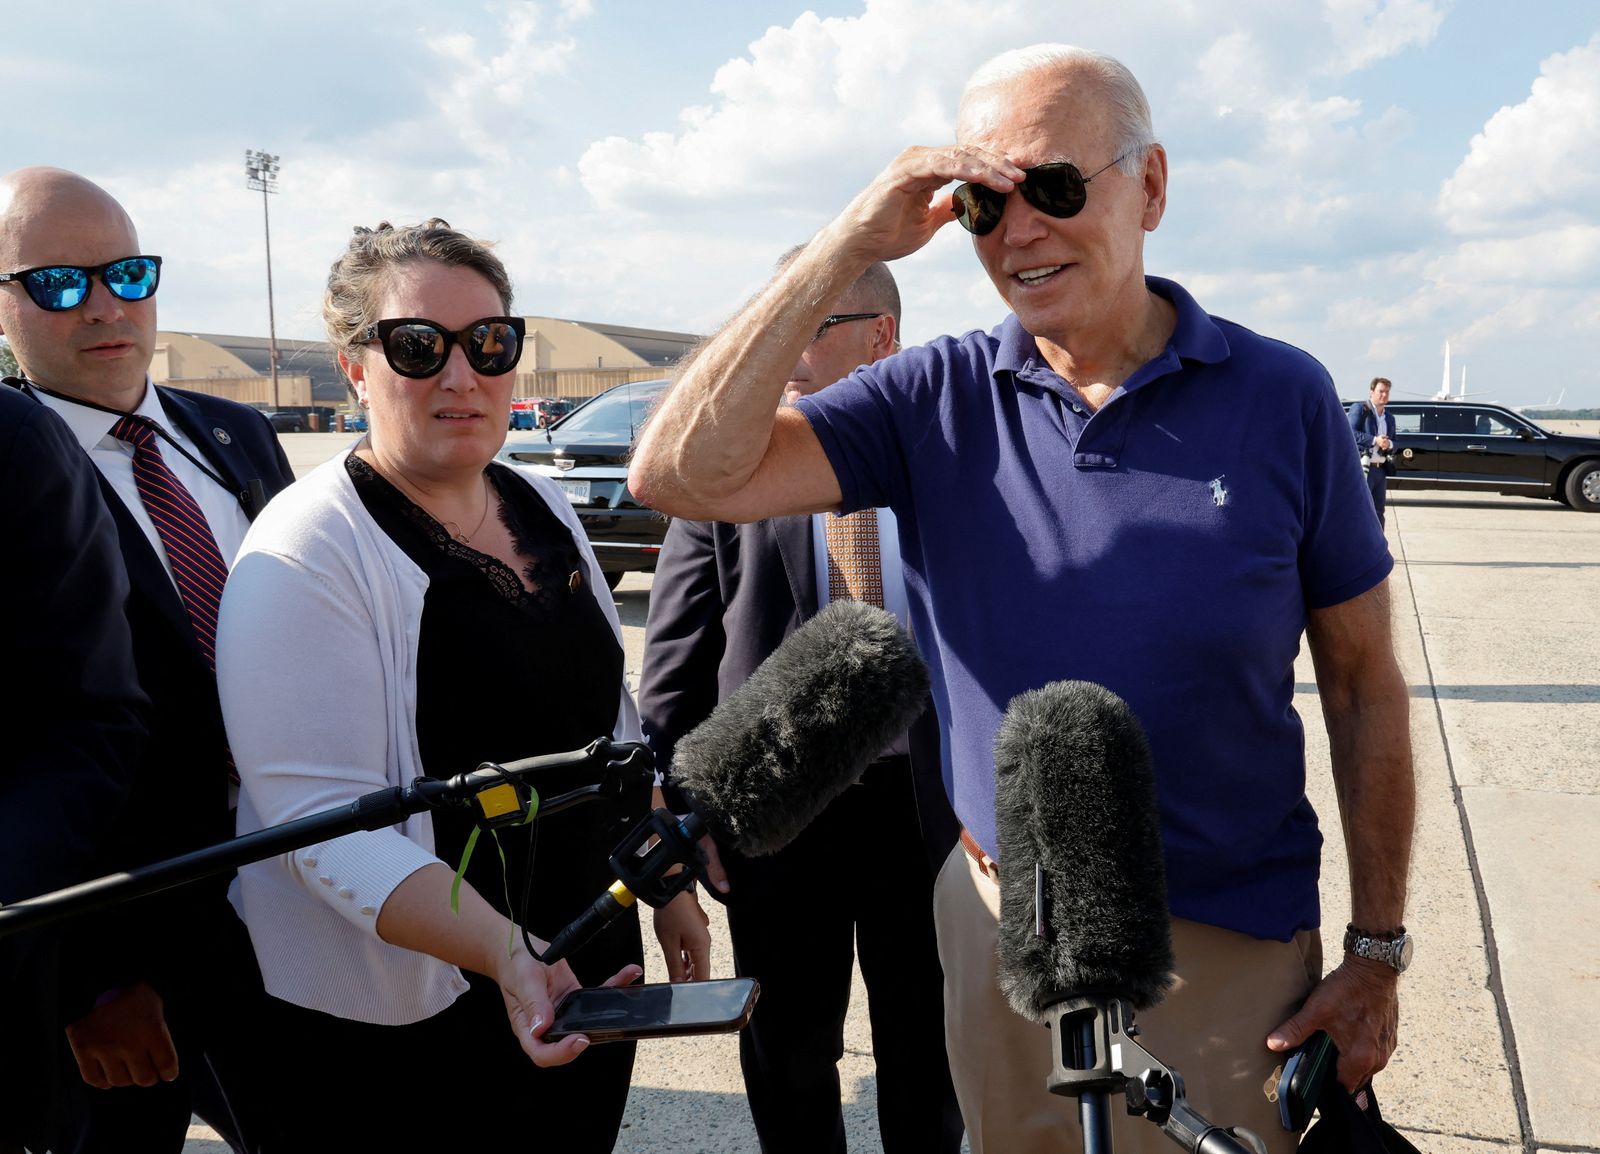 يتحدث الرئيس الأميركيي جو بايدن للصحافين قبل صعودة الطائرة في ولاية ماريلاند - 26 أغسطس 2022 - REUTERS